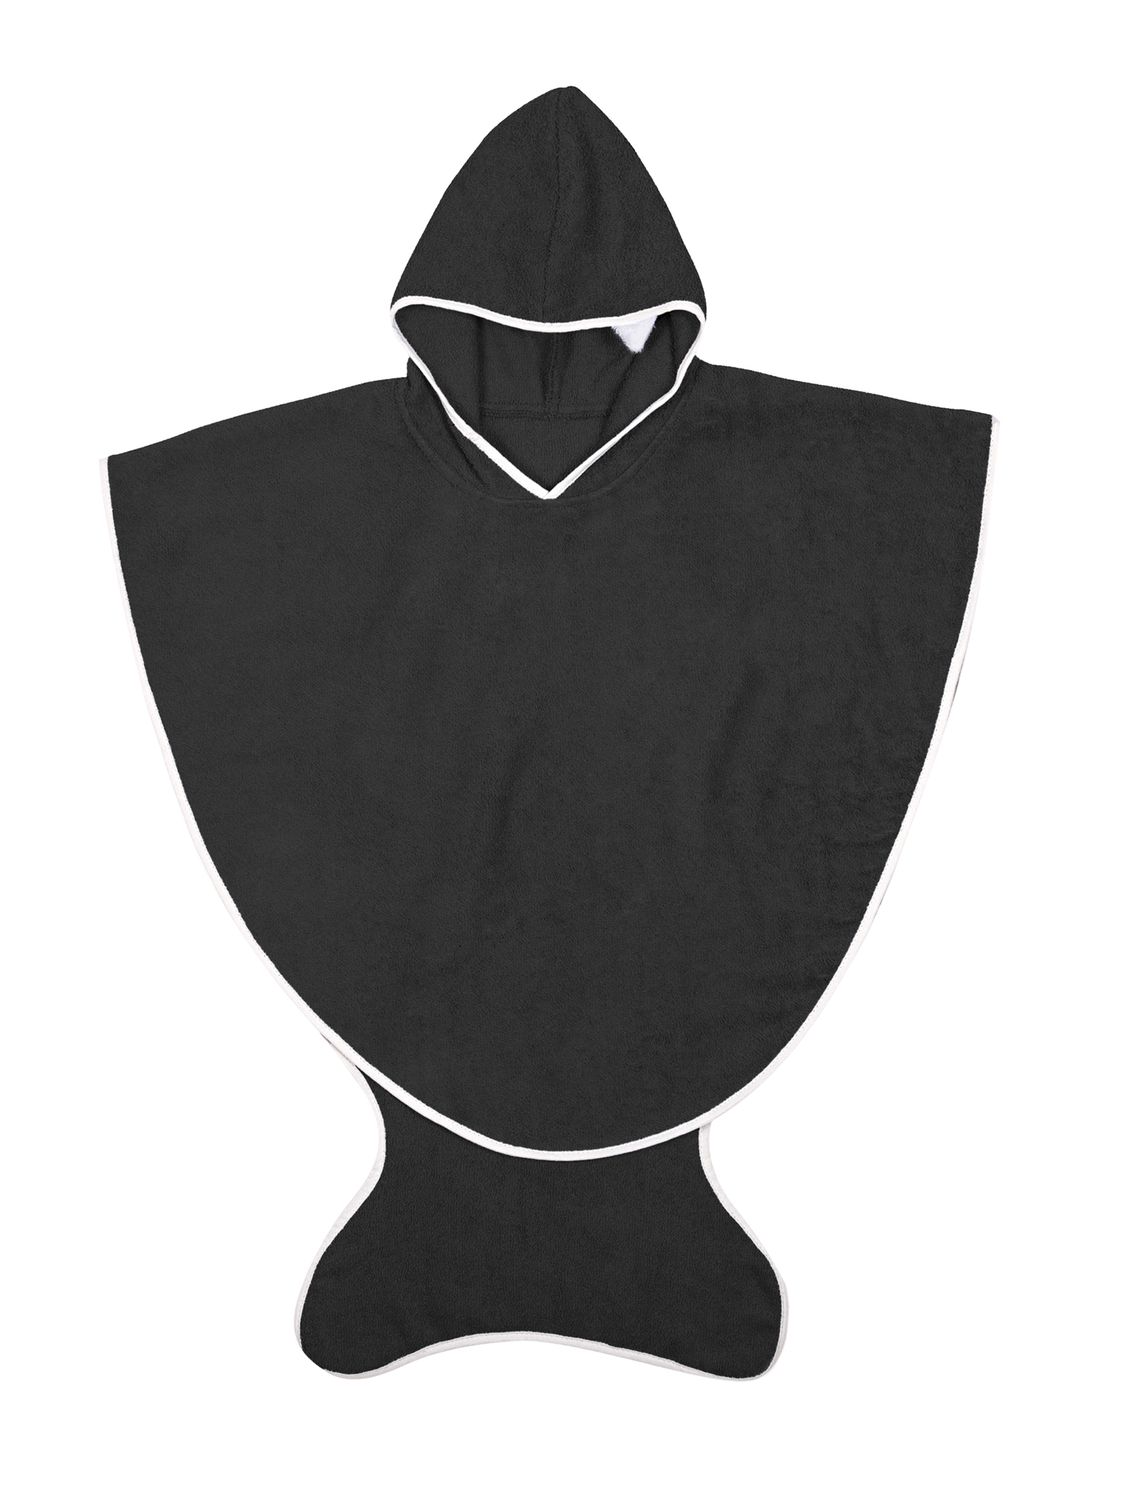 Capa de baño para bebé, diseño con calaveras negras en capucha.